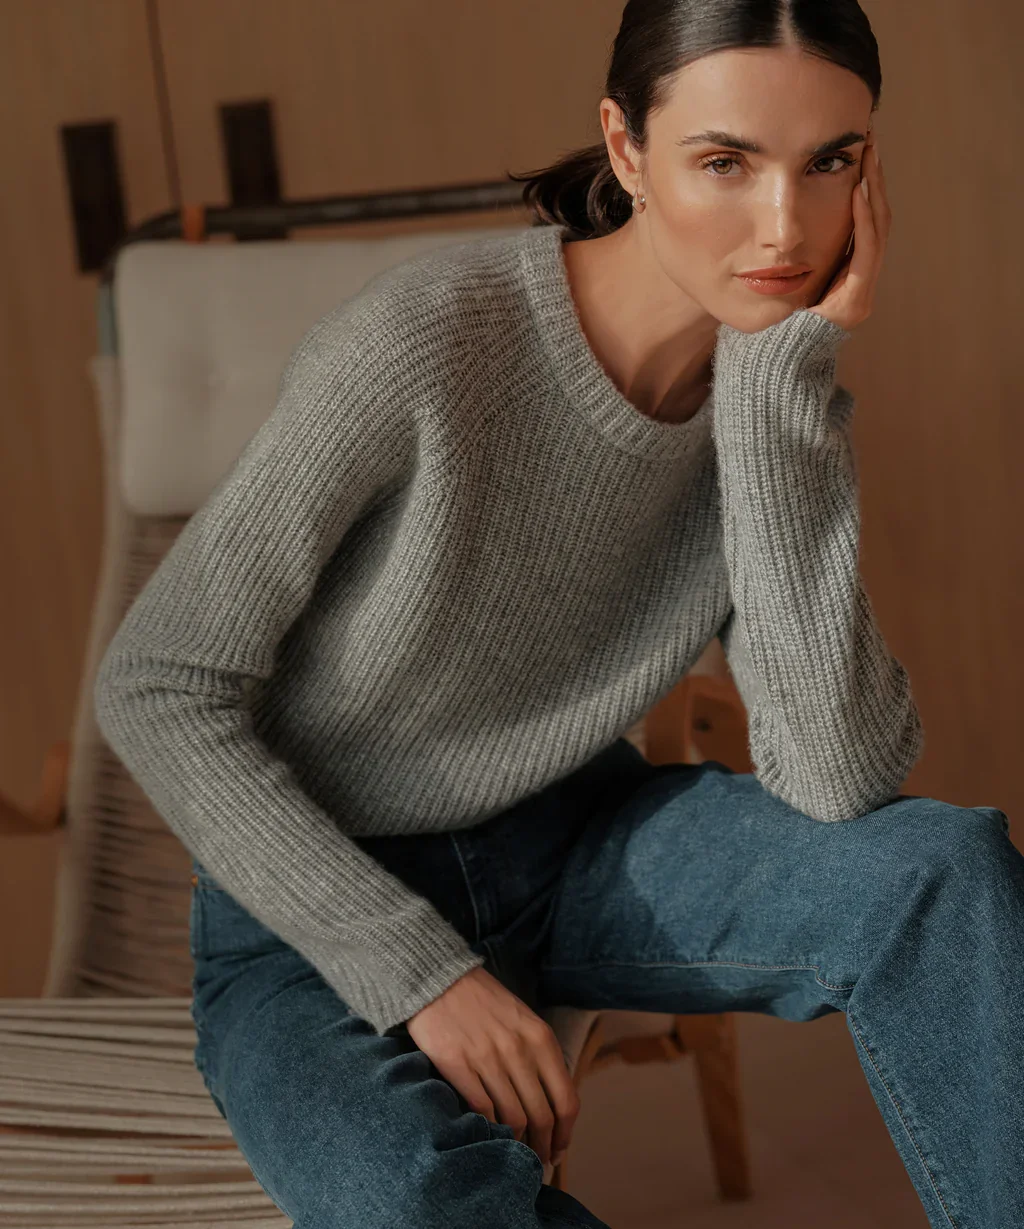 Sequin Stripes Knit Crop Top - Women - Ready-to-Wear